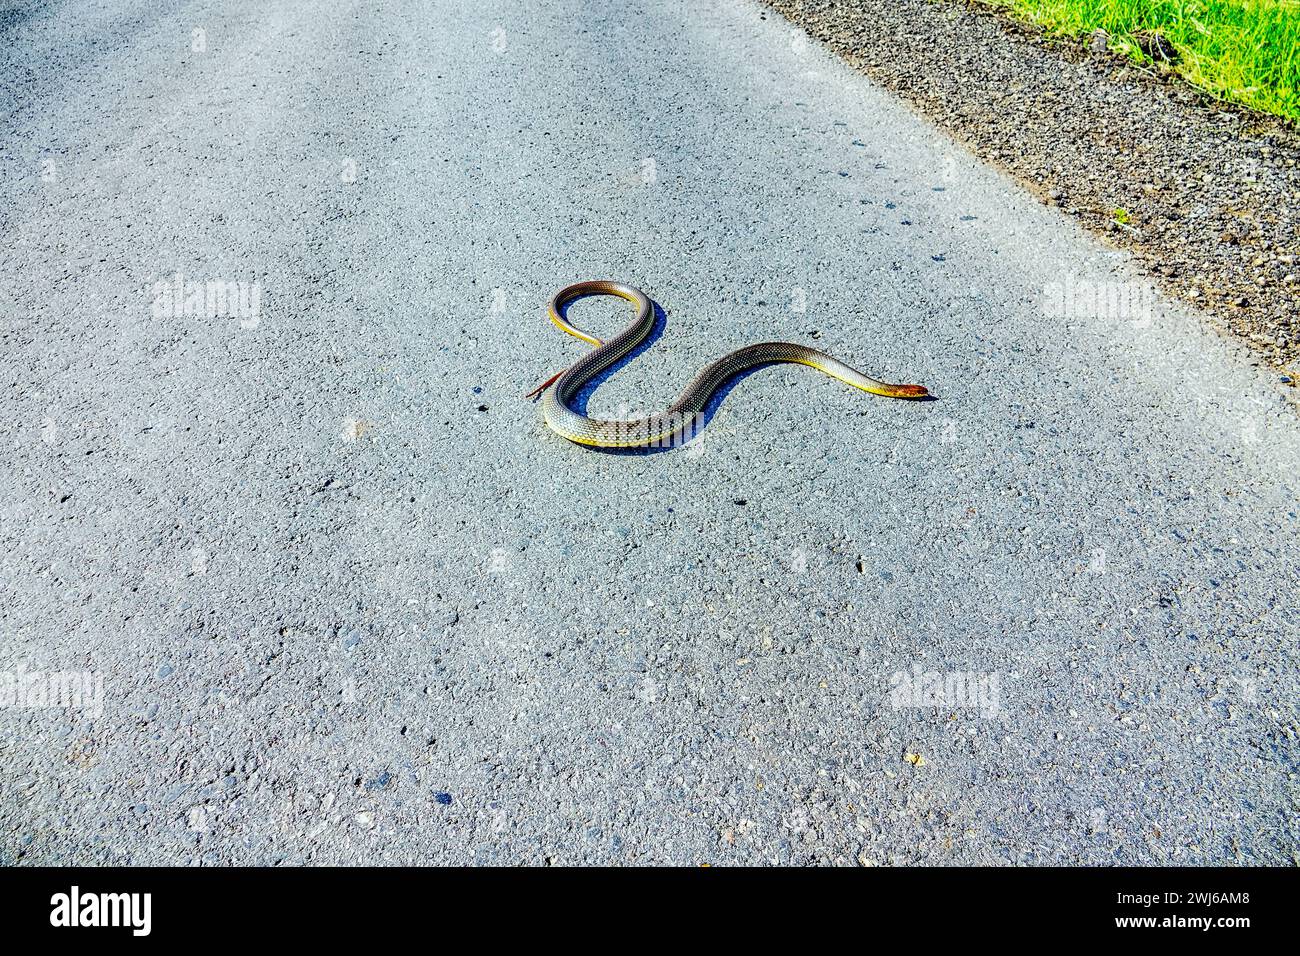 Große 1,5 Meter lange Balkanschlange (Coluber jugularis) auf der Autobahn. Es ist eine sehr mutige, aggressive Schlange im Verhältnis zu Raubtieren, die kühn offene Räume überwindet Stockfoto